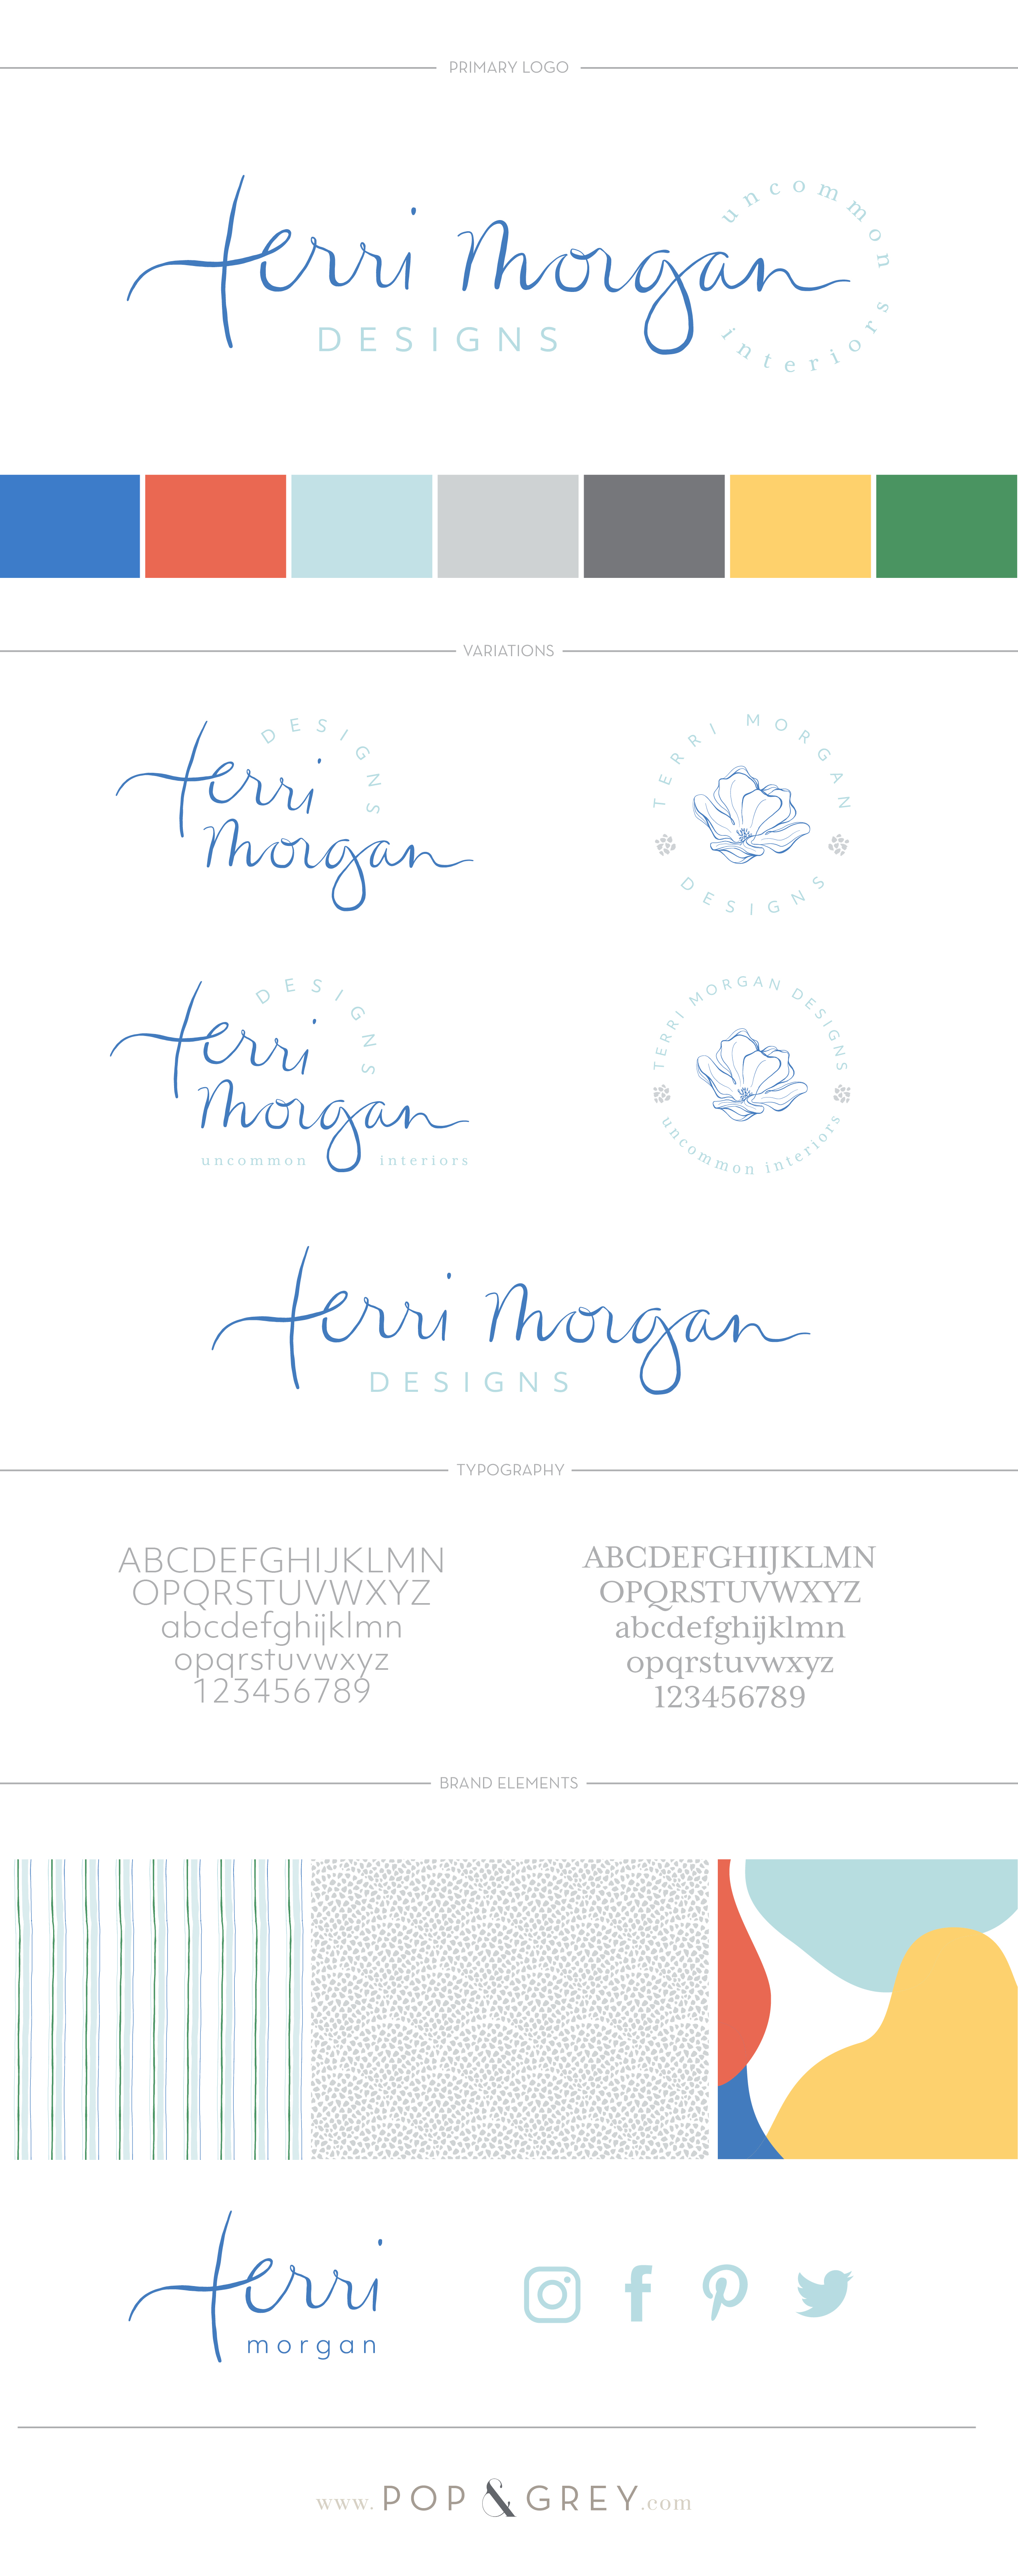 Terri Morgan interior designs brand design by Pop & Grey